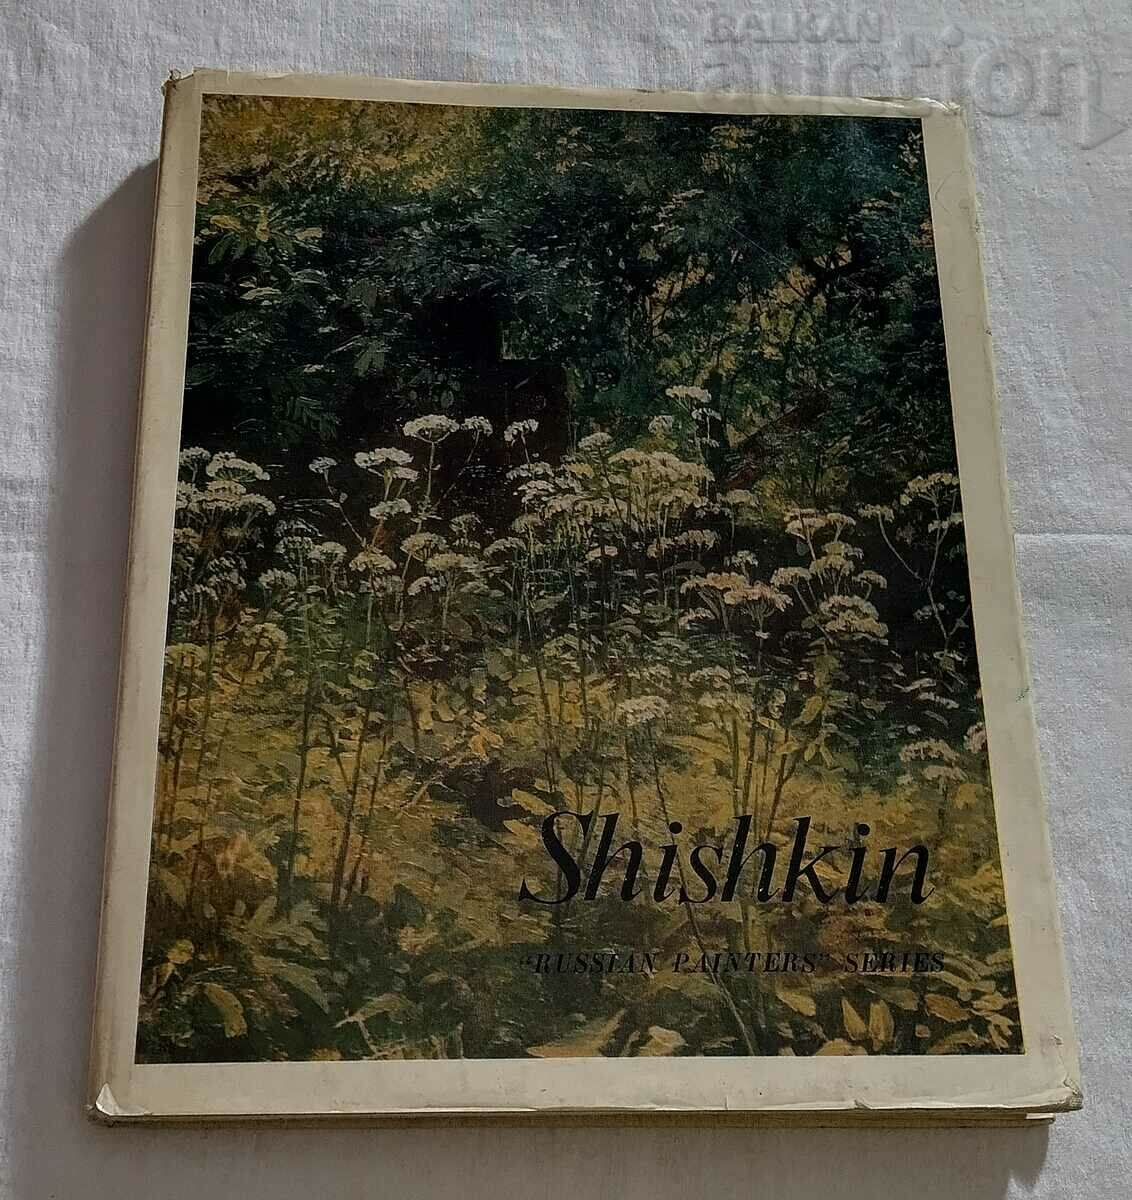 SHISHKIN SHISHKIN ART ALBUM 1971 ΣΤΑ ΑΓΓΛΙΚΑ